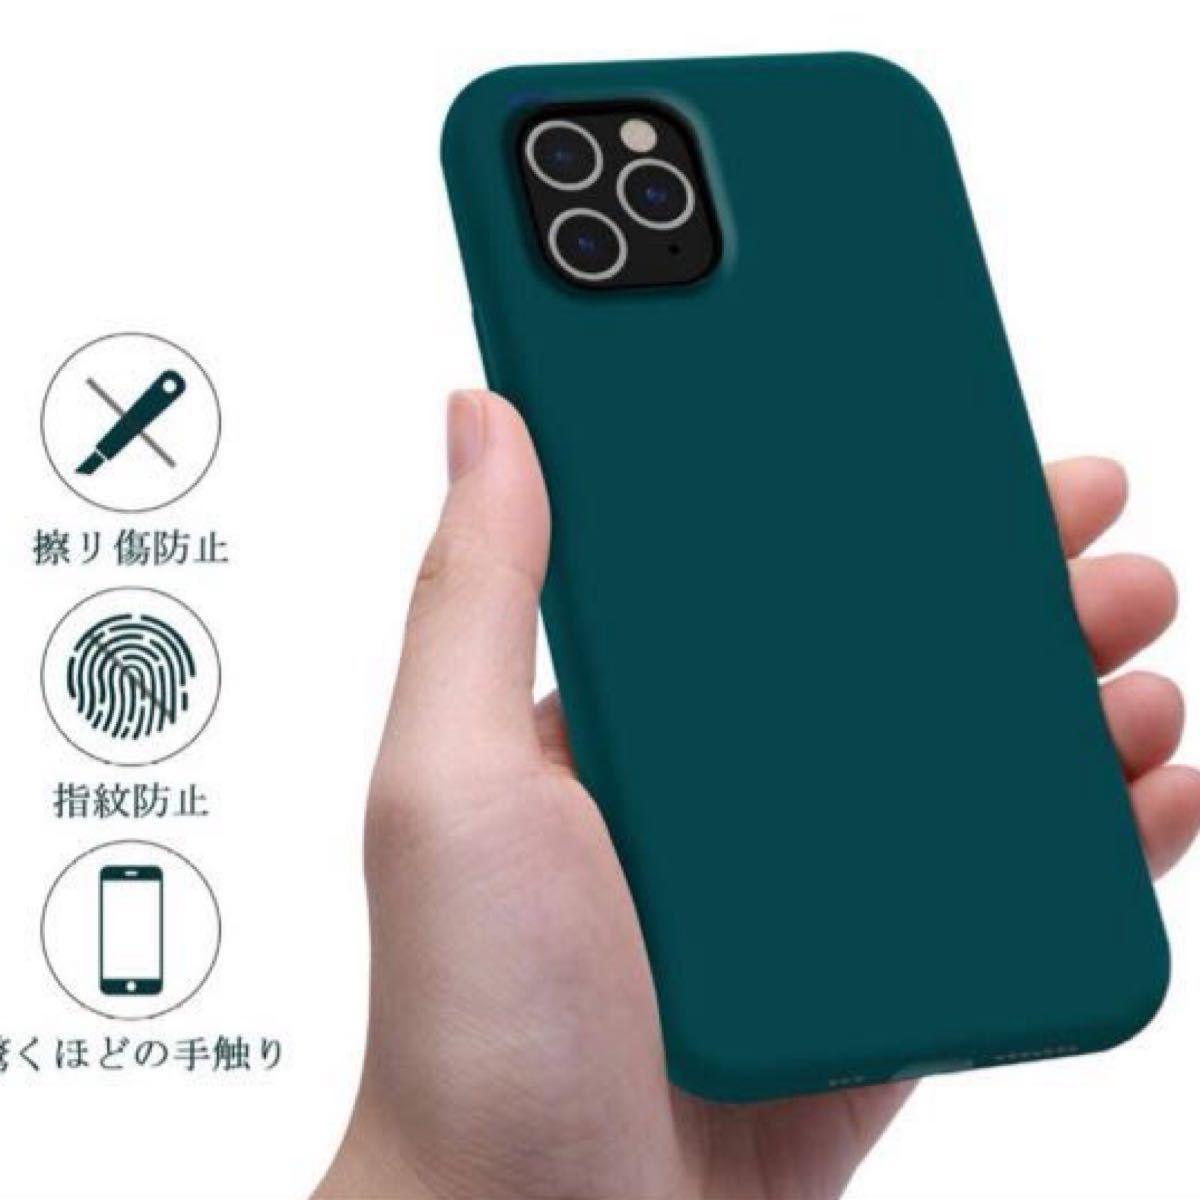 【残り1点】【1点限り】iPhone 11 Pro Maxシリコンケース 薄型 超軽量 指紋防止 全面保護 耐衝撃ダークグリーン